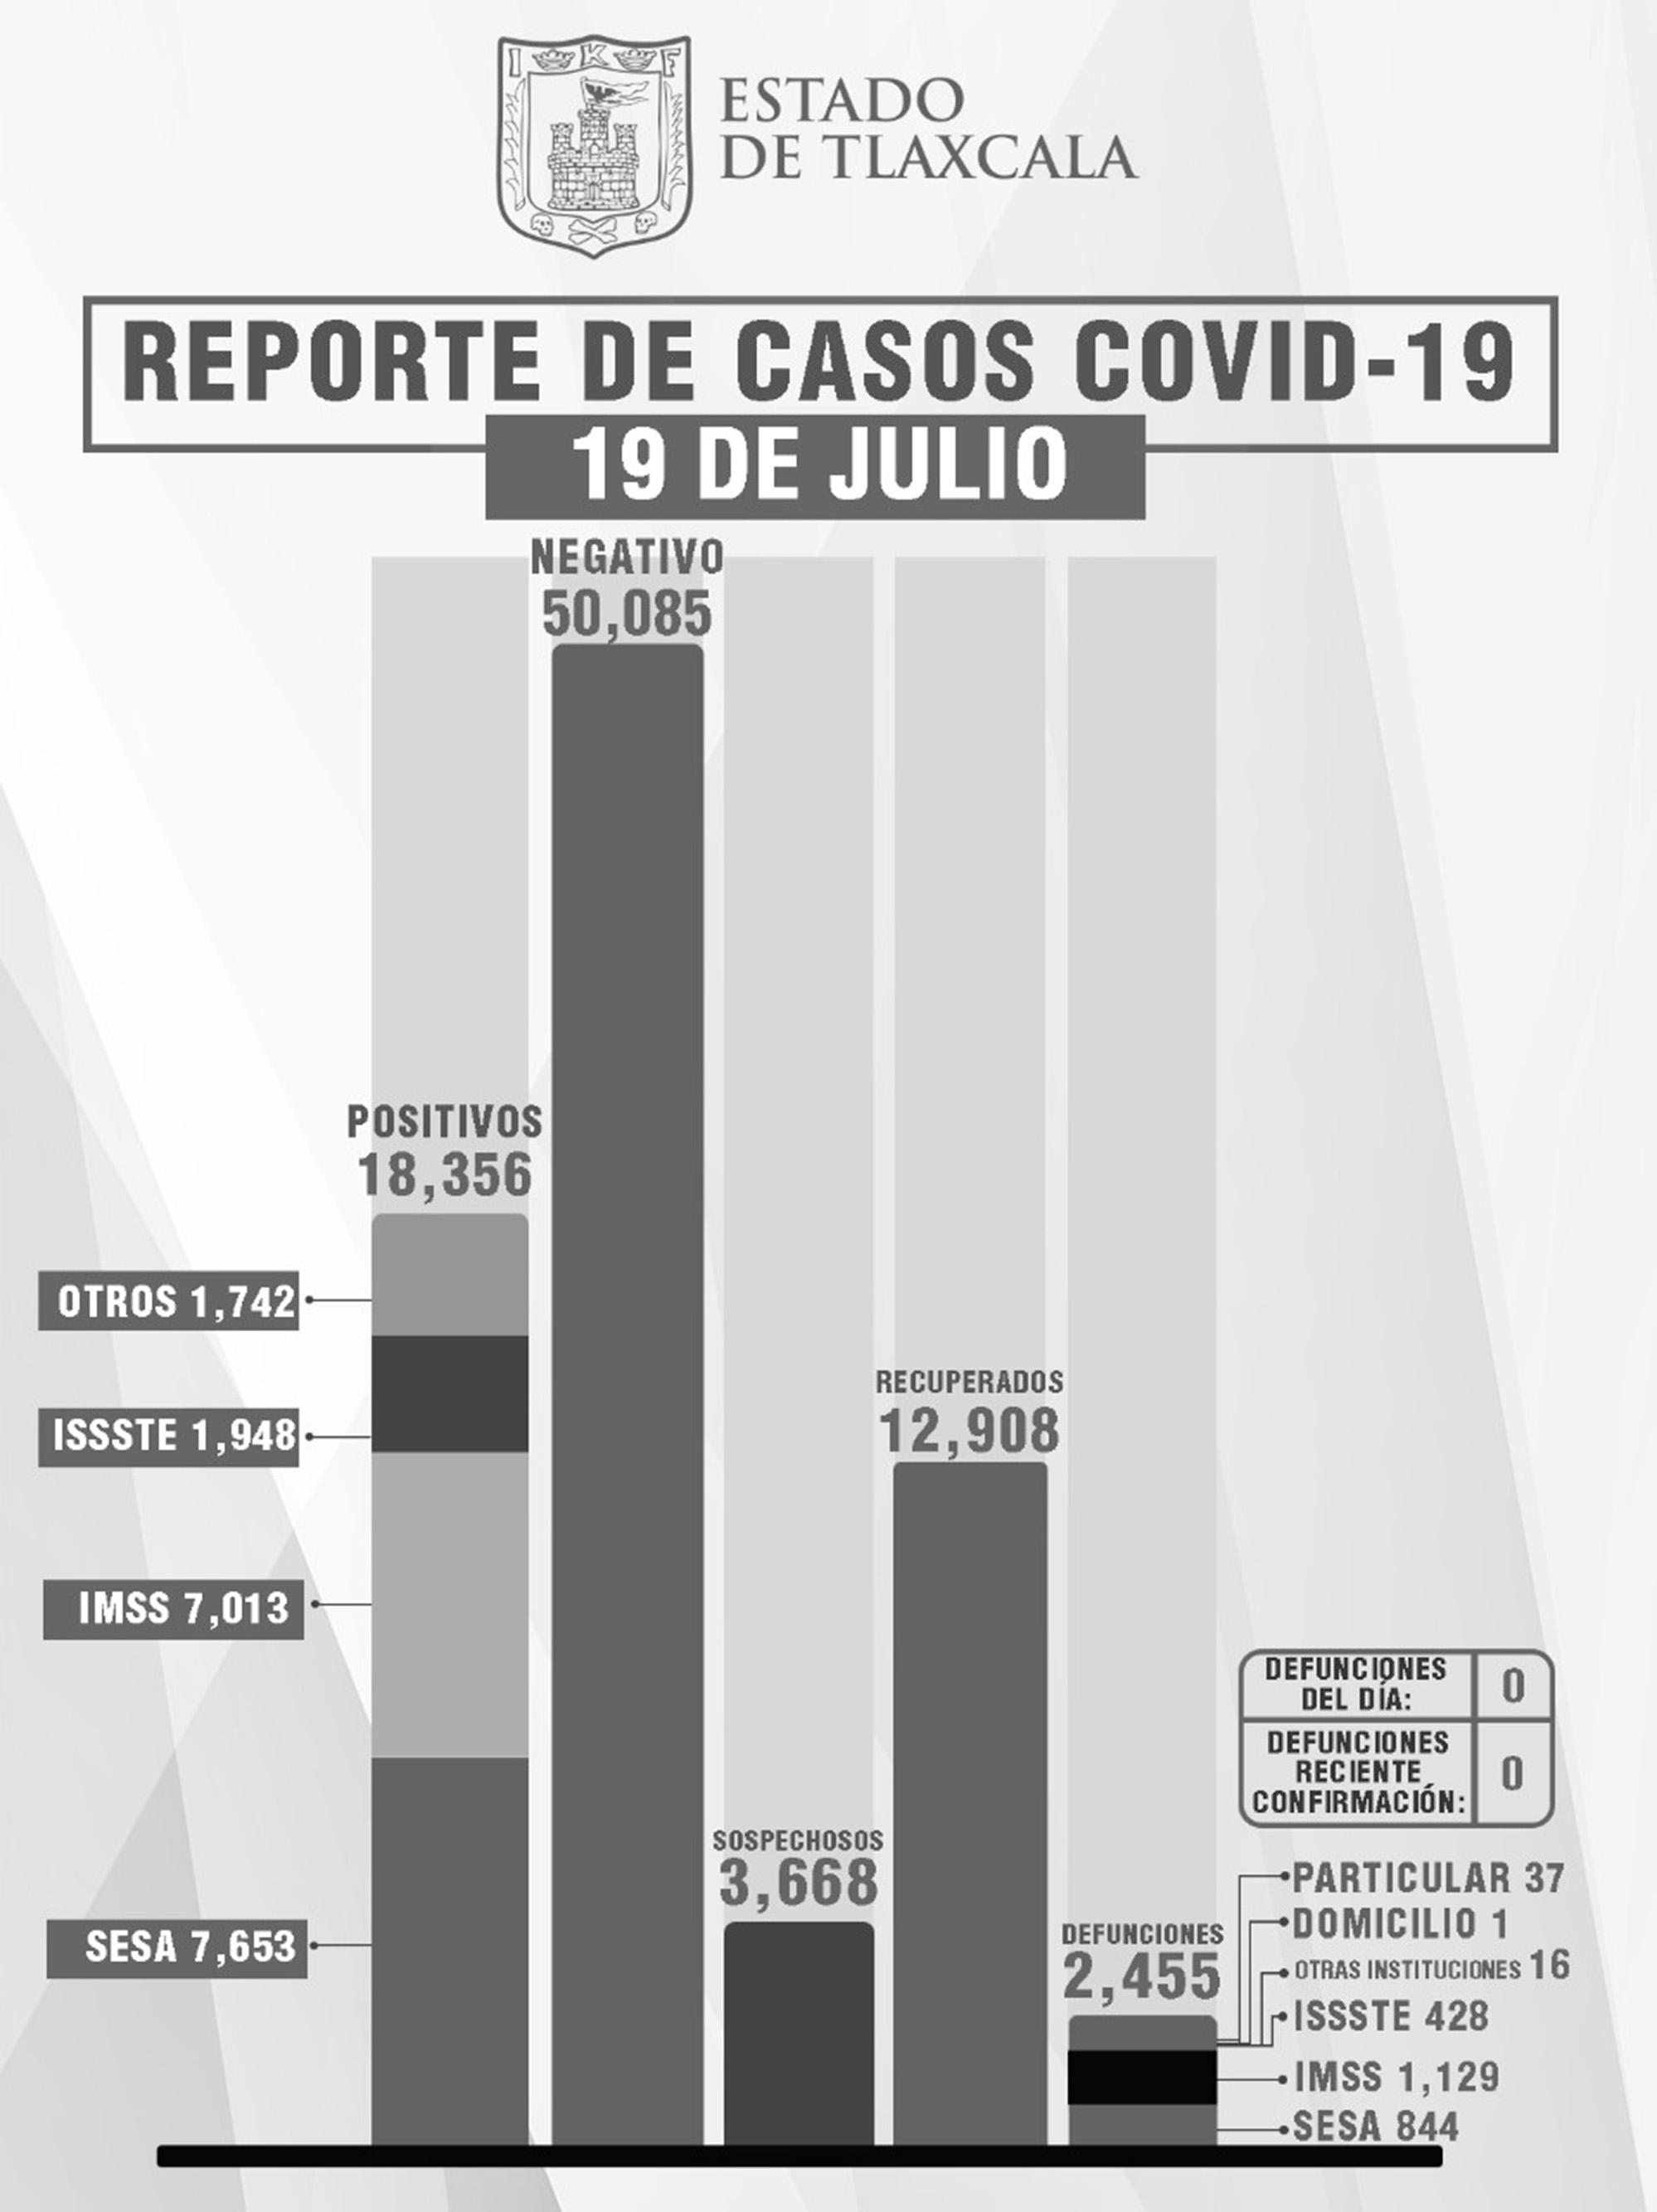  Aumentan casos de Covid en Tlaxcala, no hay muertos aún